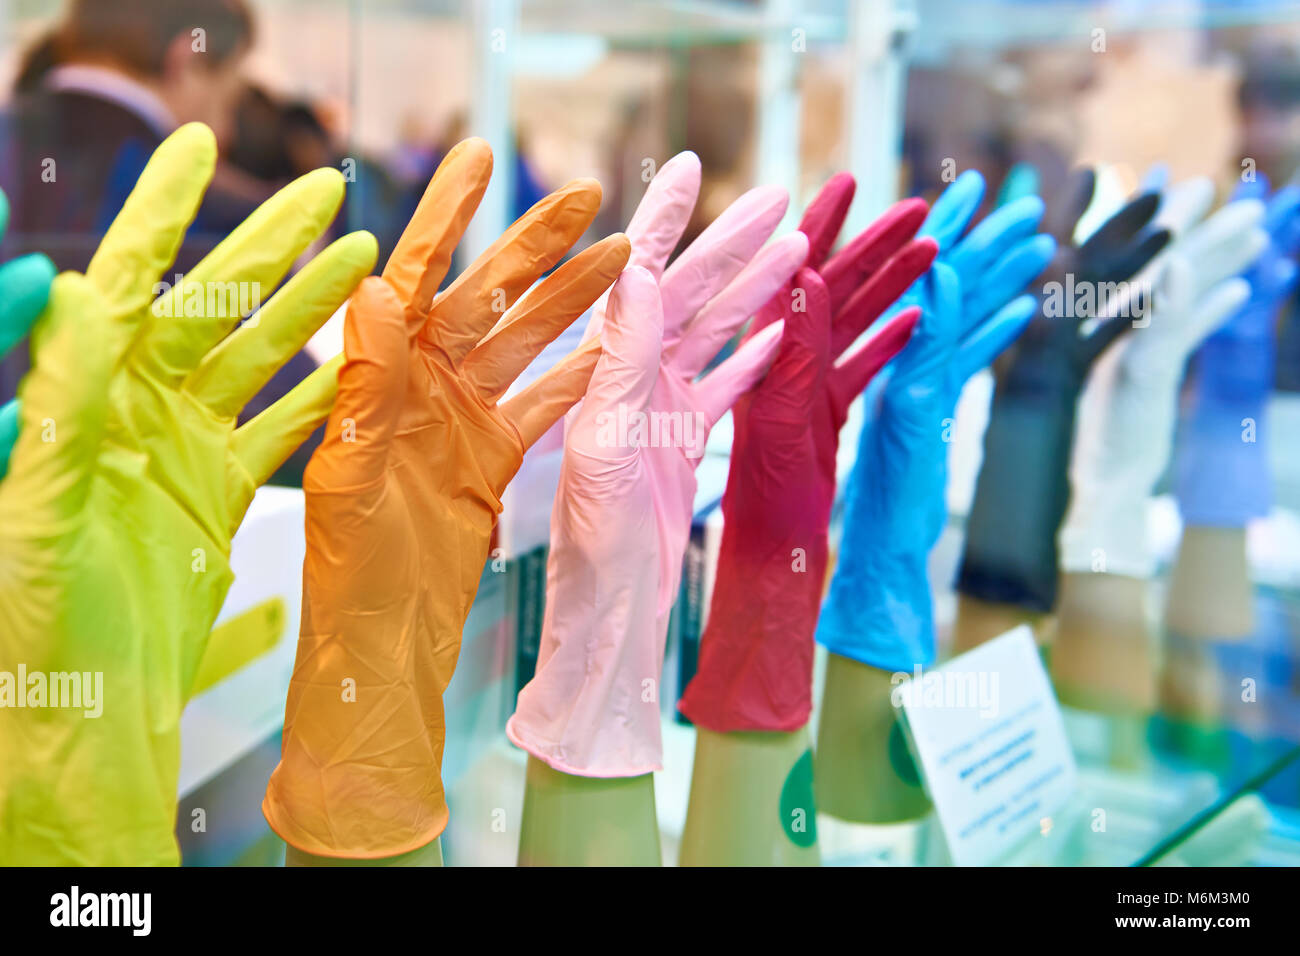 Gants en caoutchouc médical colorés pour les médecins Banque D'Images